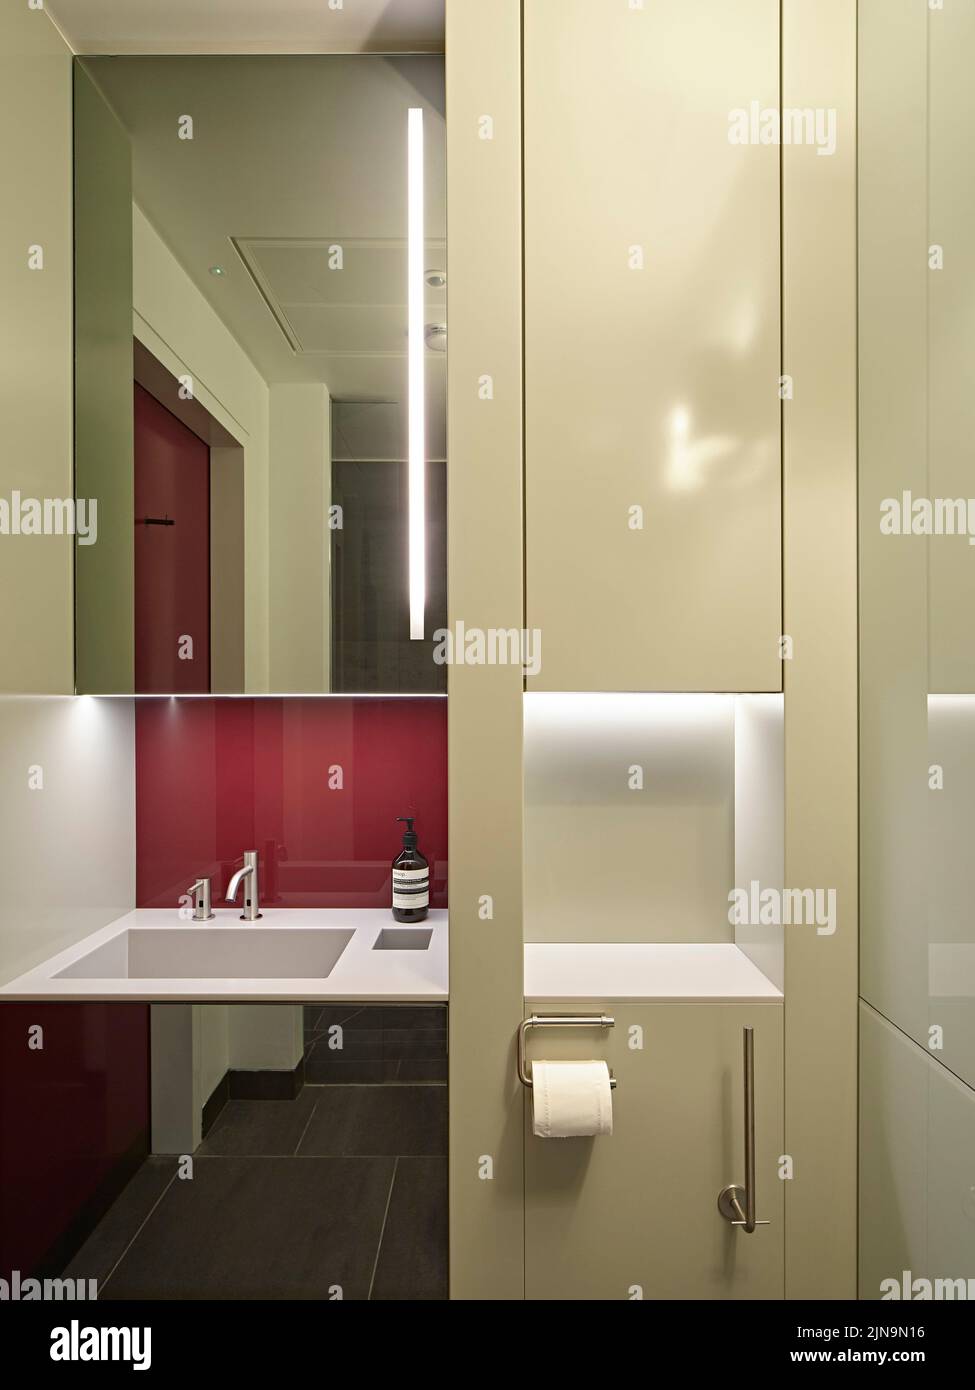 Détails sur les toilettes. 30 St James' Square, Londres, Royaume-Uni. Architecte: Eric Parry Architects Ltd, 2021. Banque D'Images